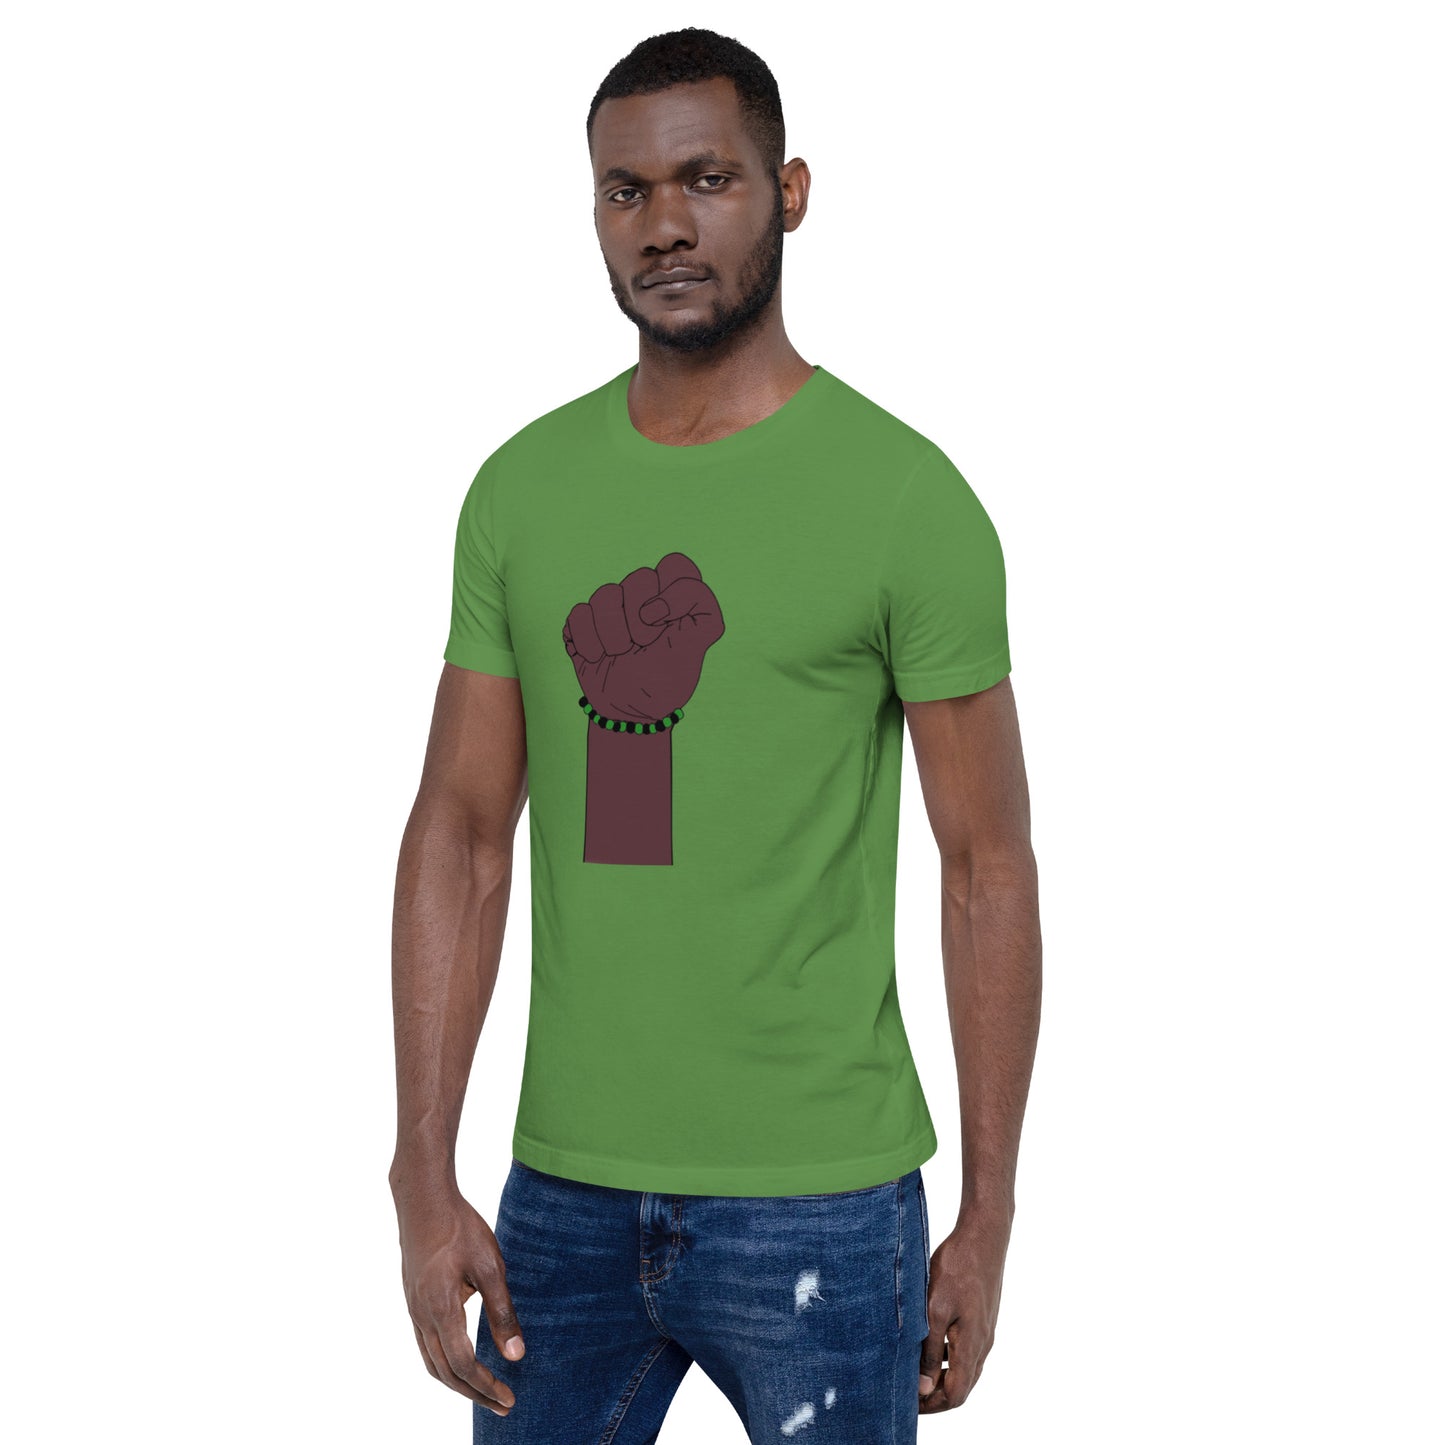 Ogun Men's Ide T-shirt